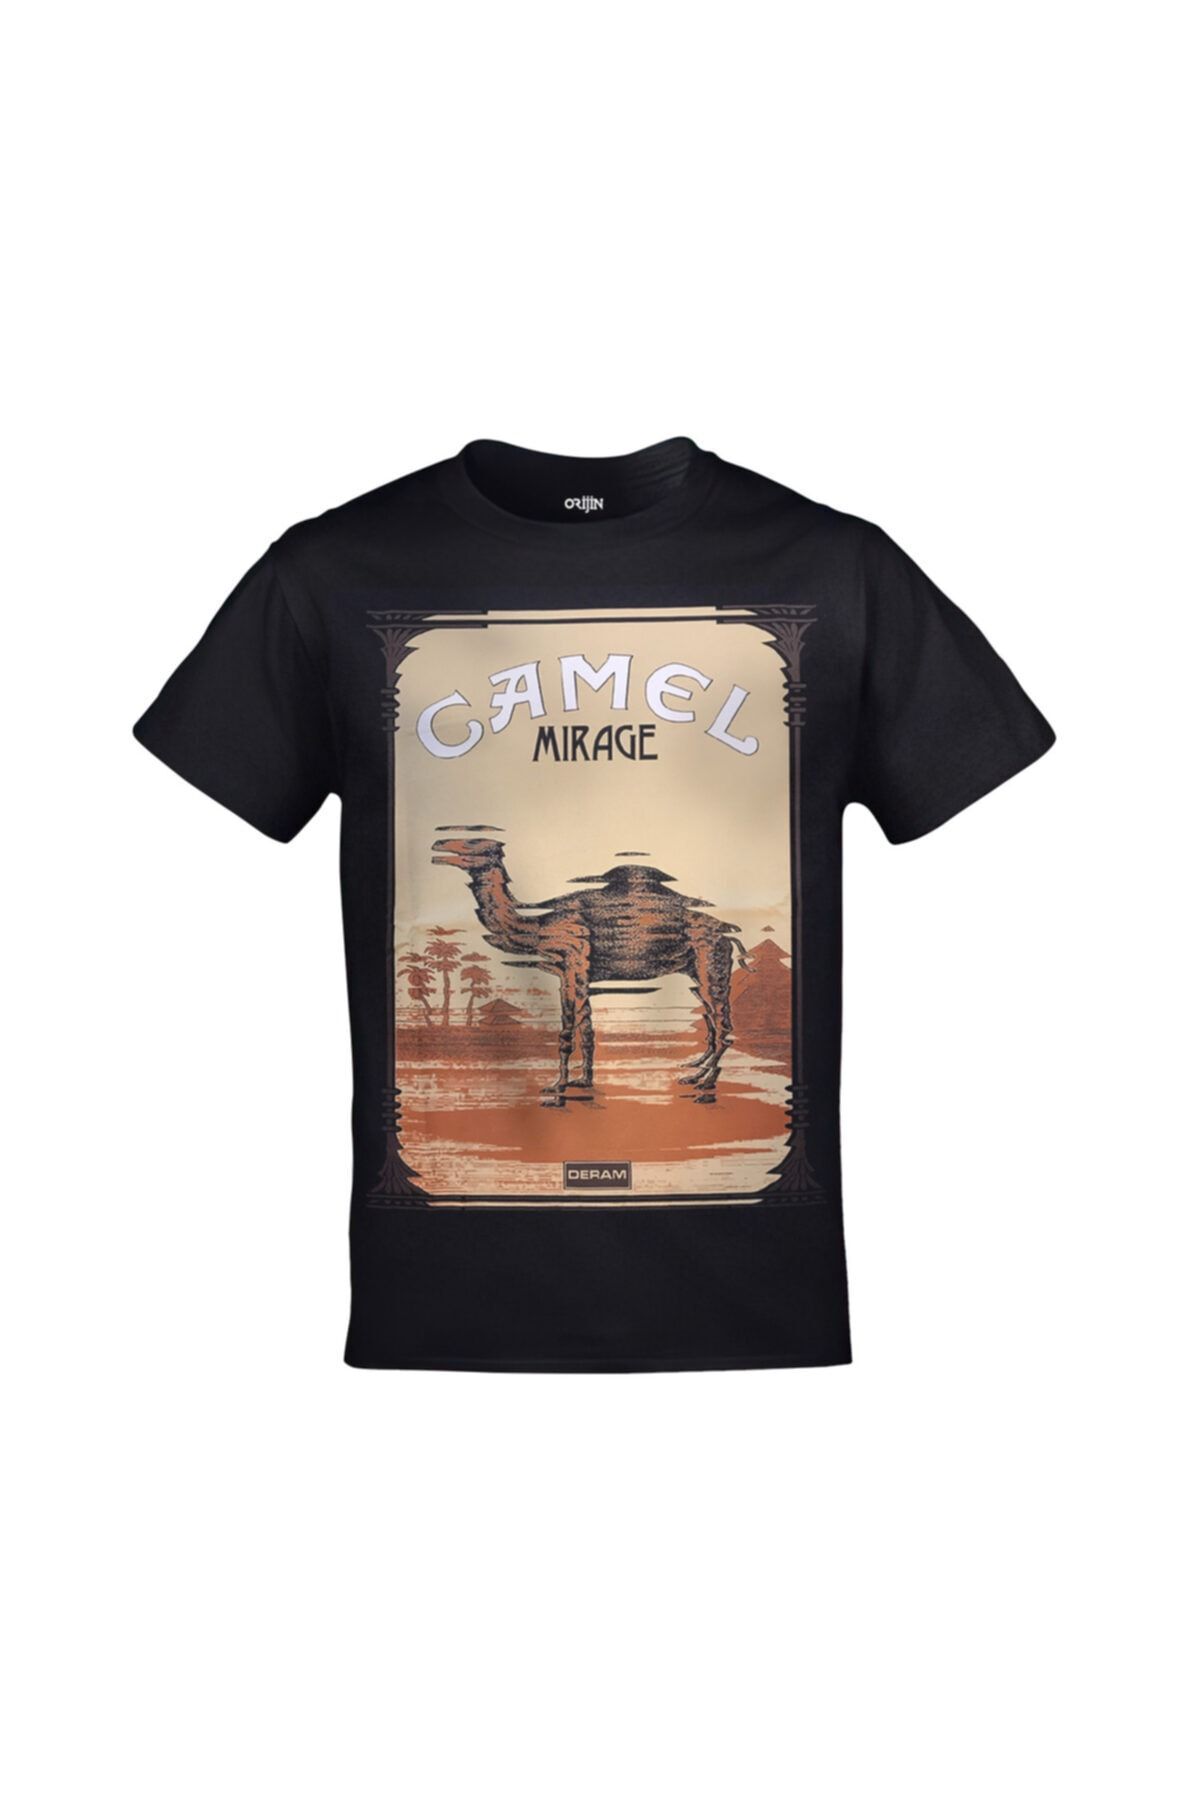 Orijin Tekstil Camel Mirage Baskılı Unisex Siyah Tshirt